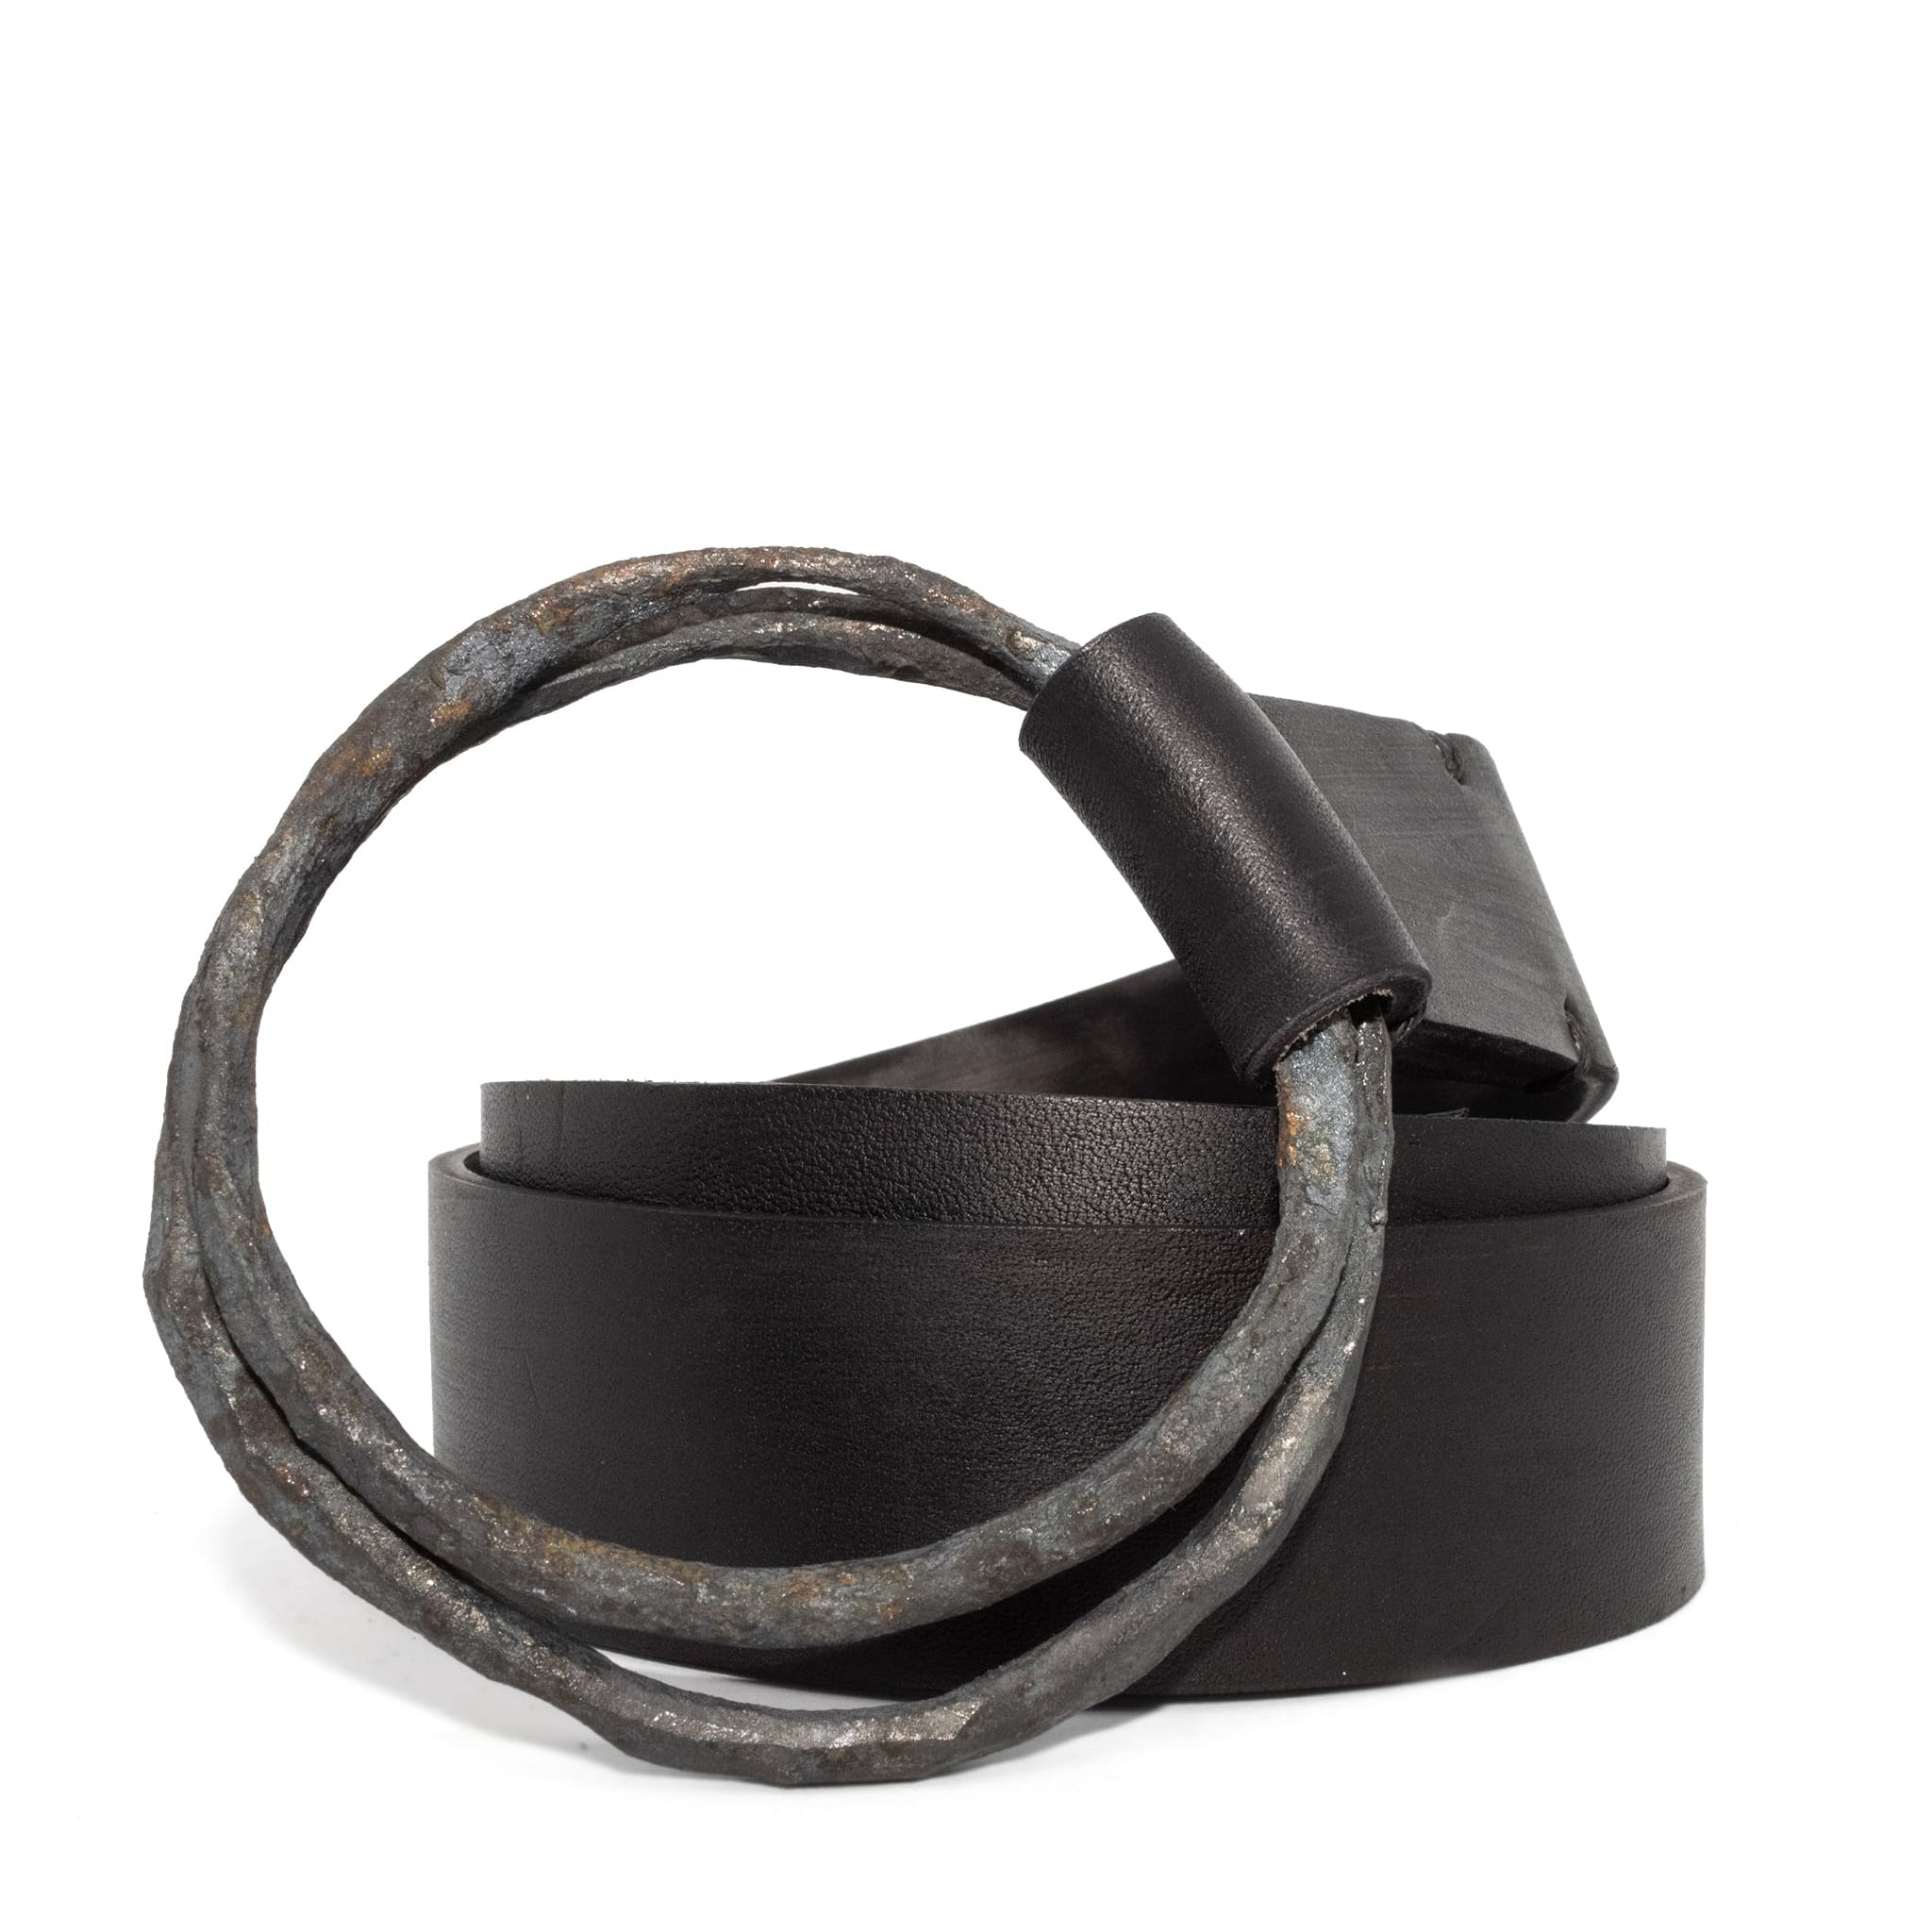 shop handmade Avant Garde leather belts online from atelier skn.